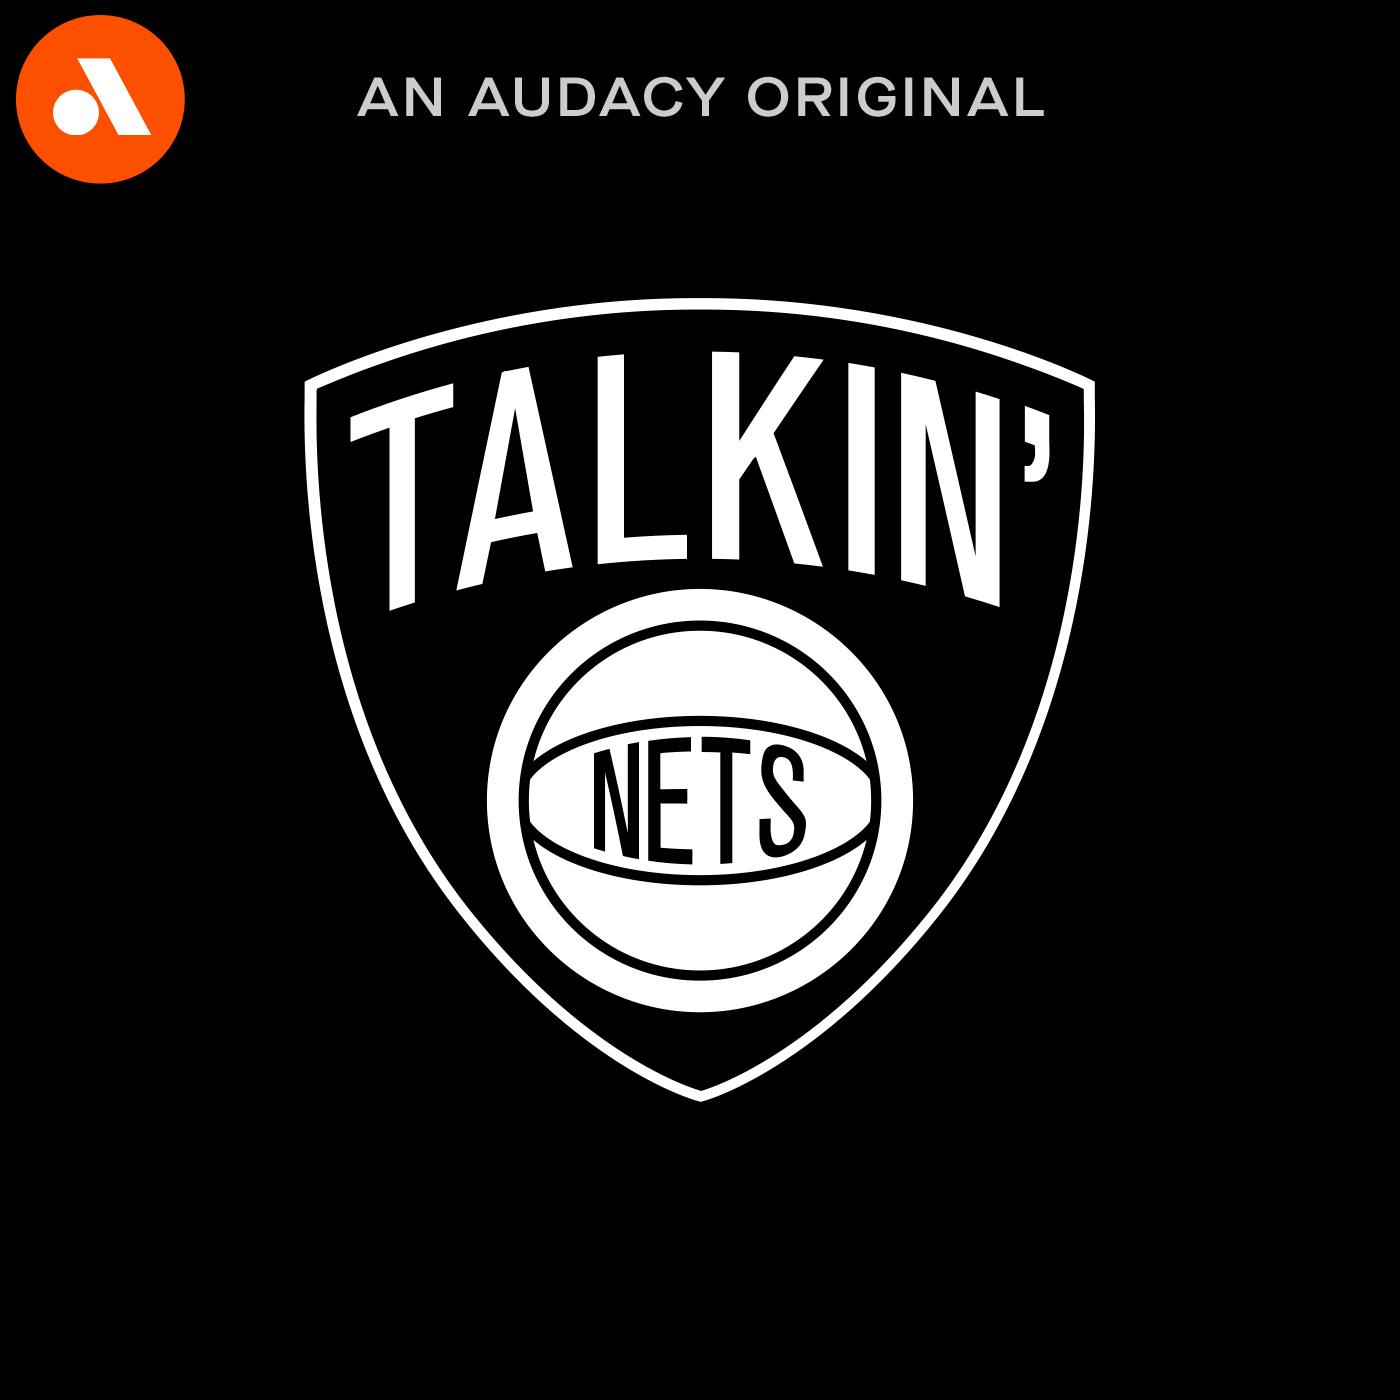 Talkin' Nets